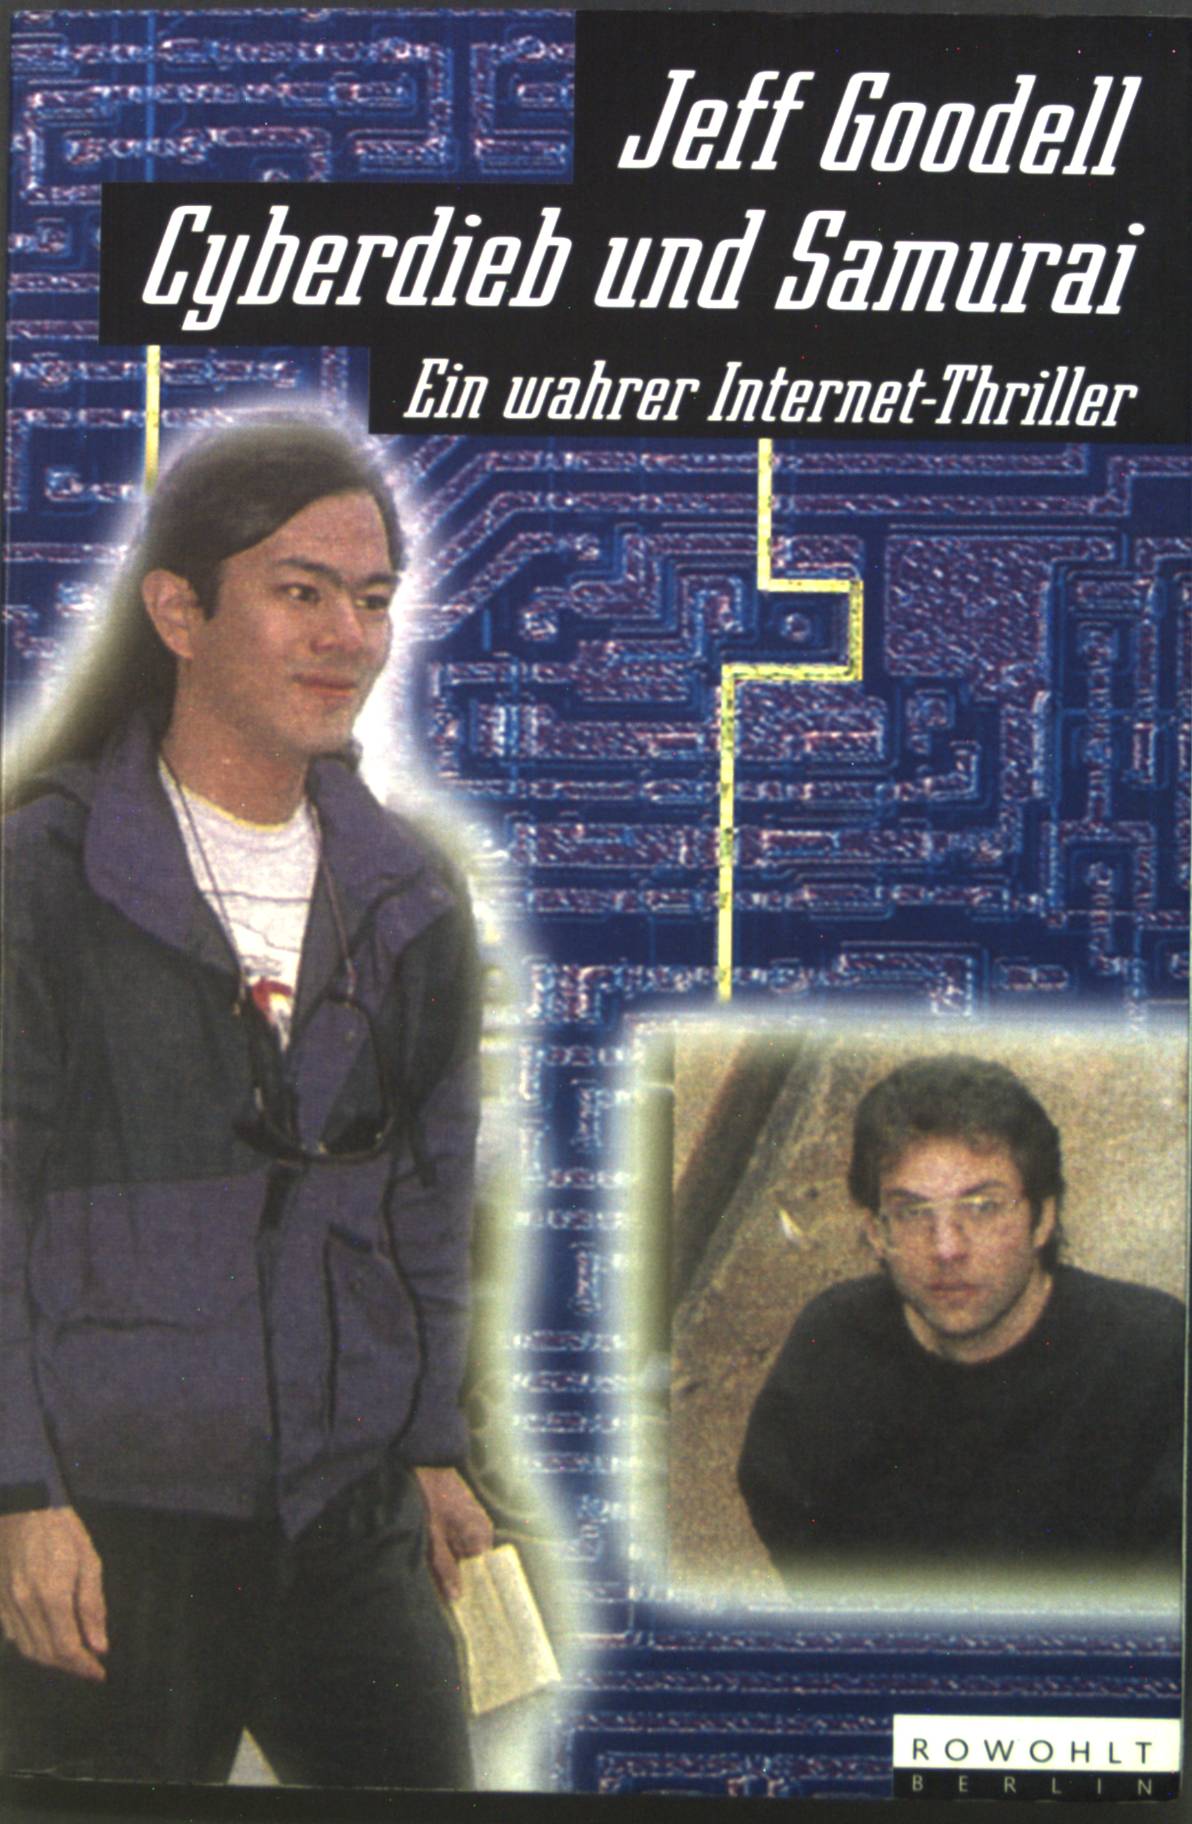 Cyberdieb und Samurai : Ein wahrer Internet-Thriller. - Goodell, Jeff